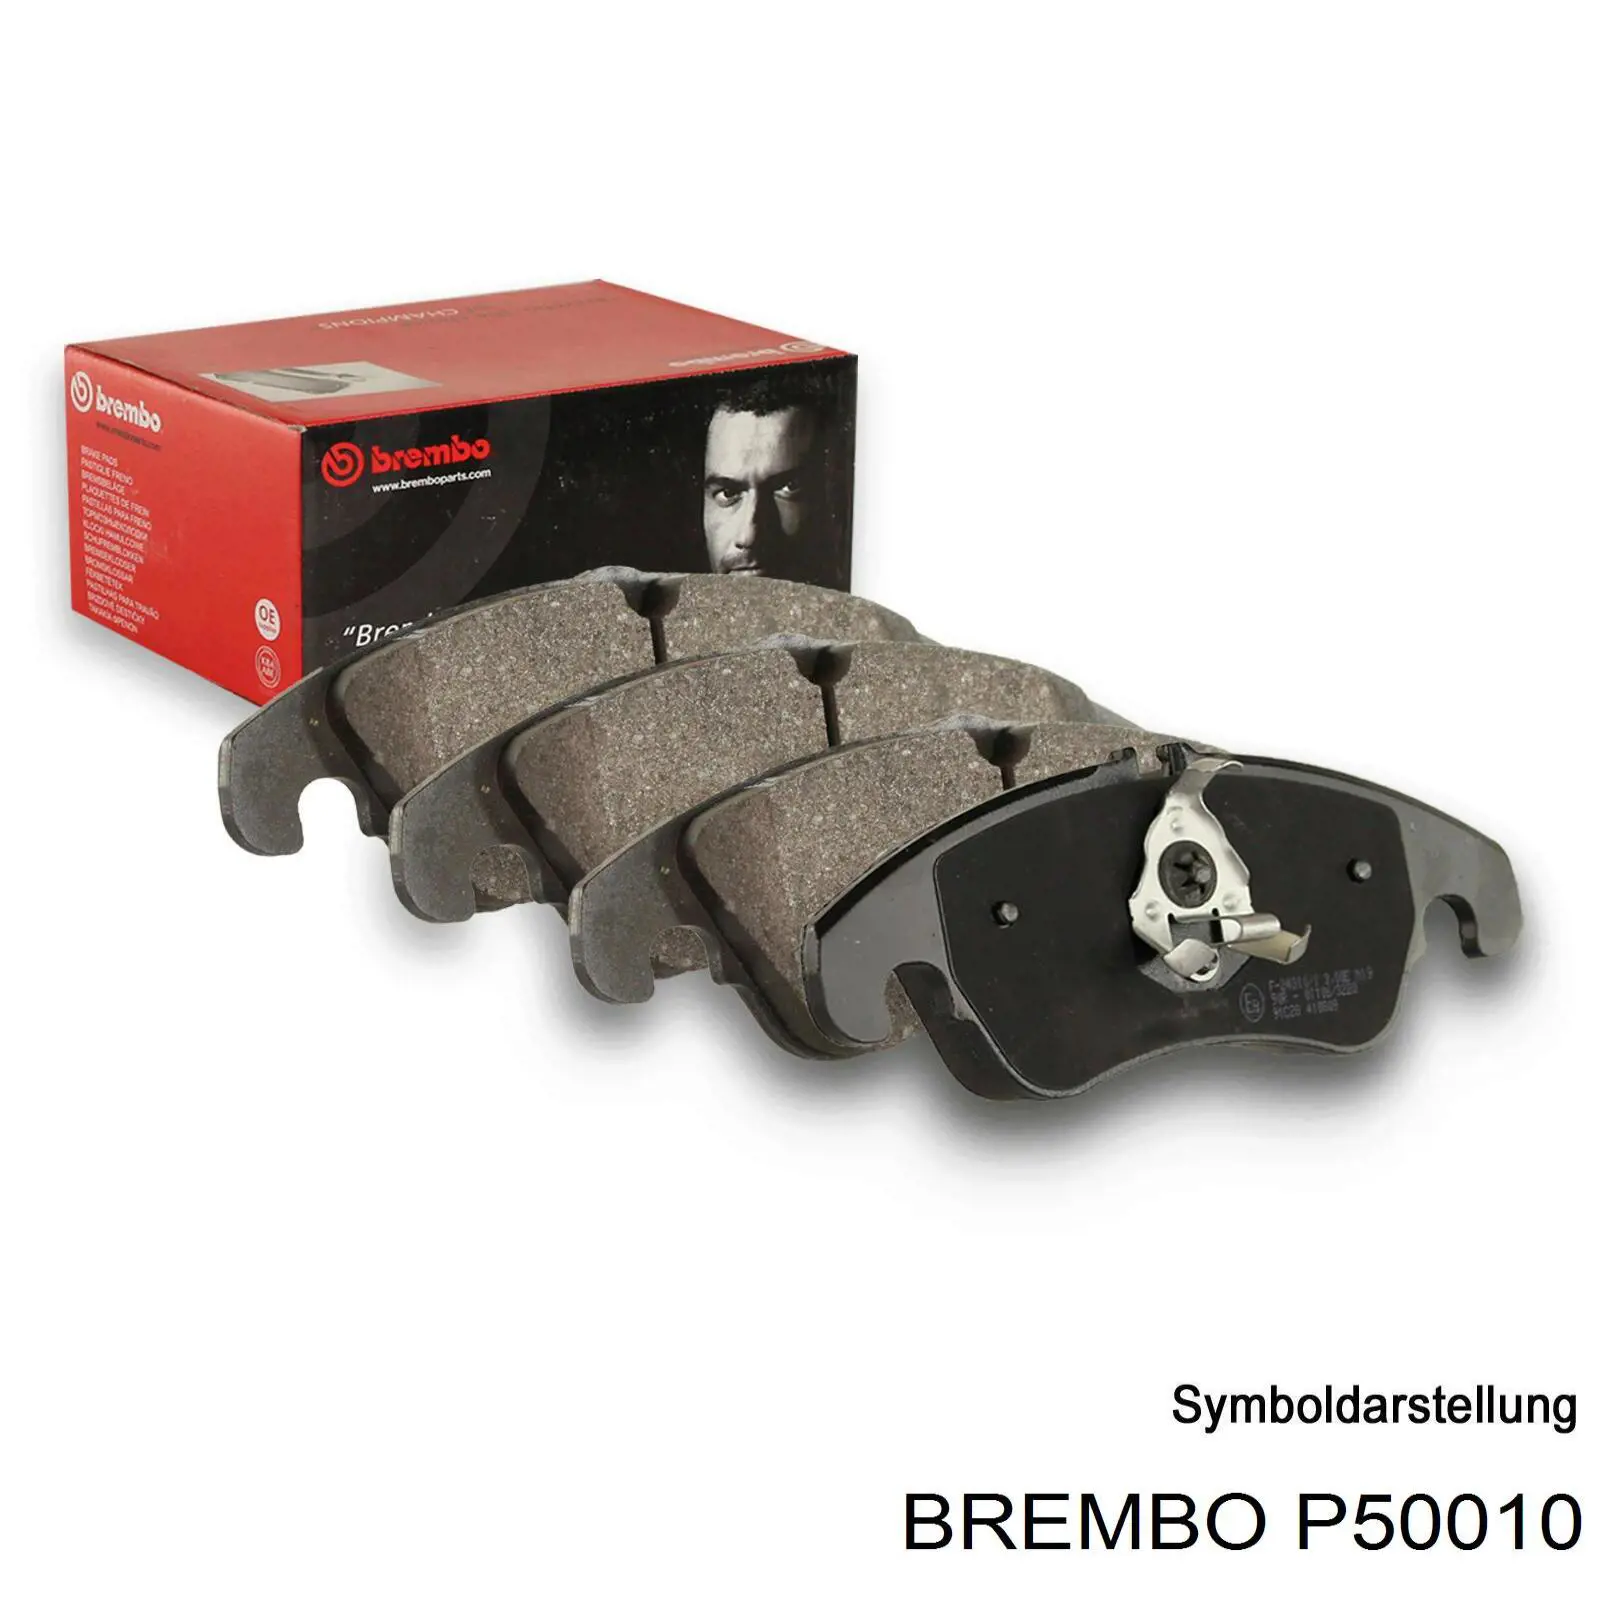 P50010 Brembo колодки тормозные передние дисковые